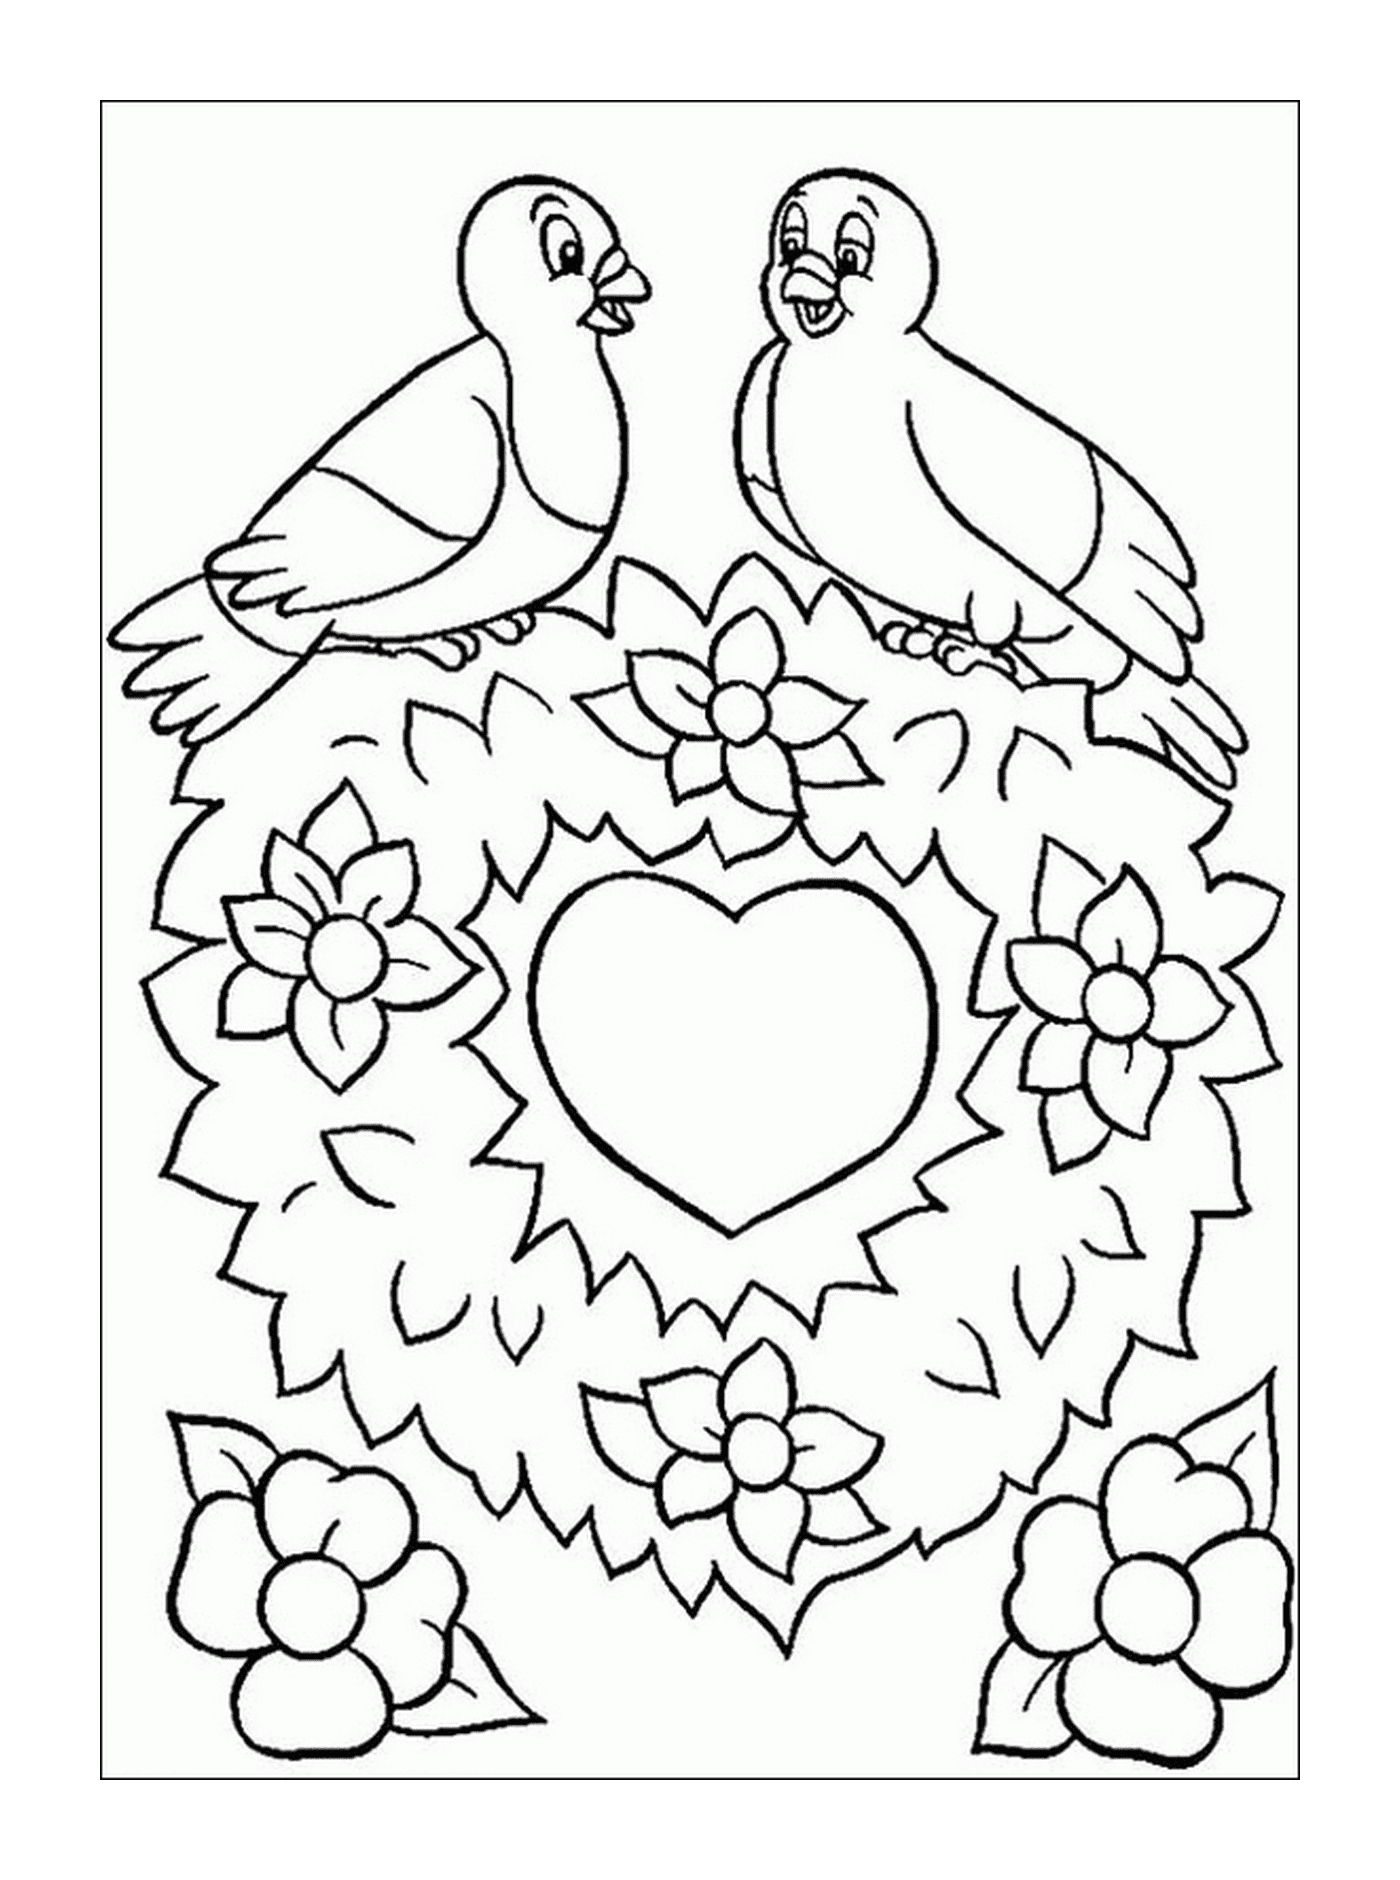  Valentine's Day, birds in love 